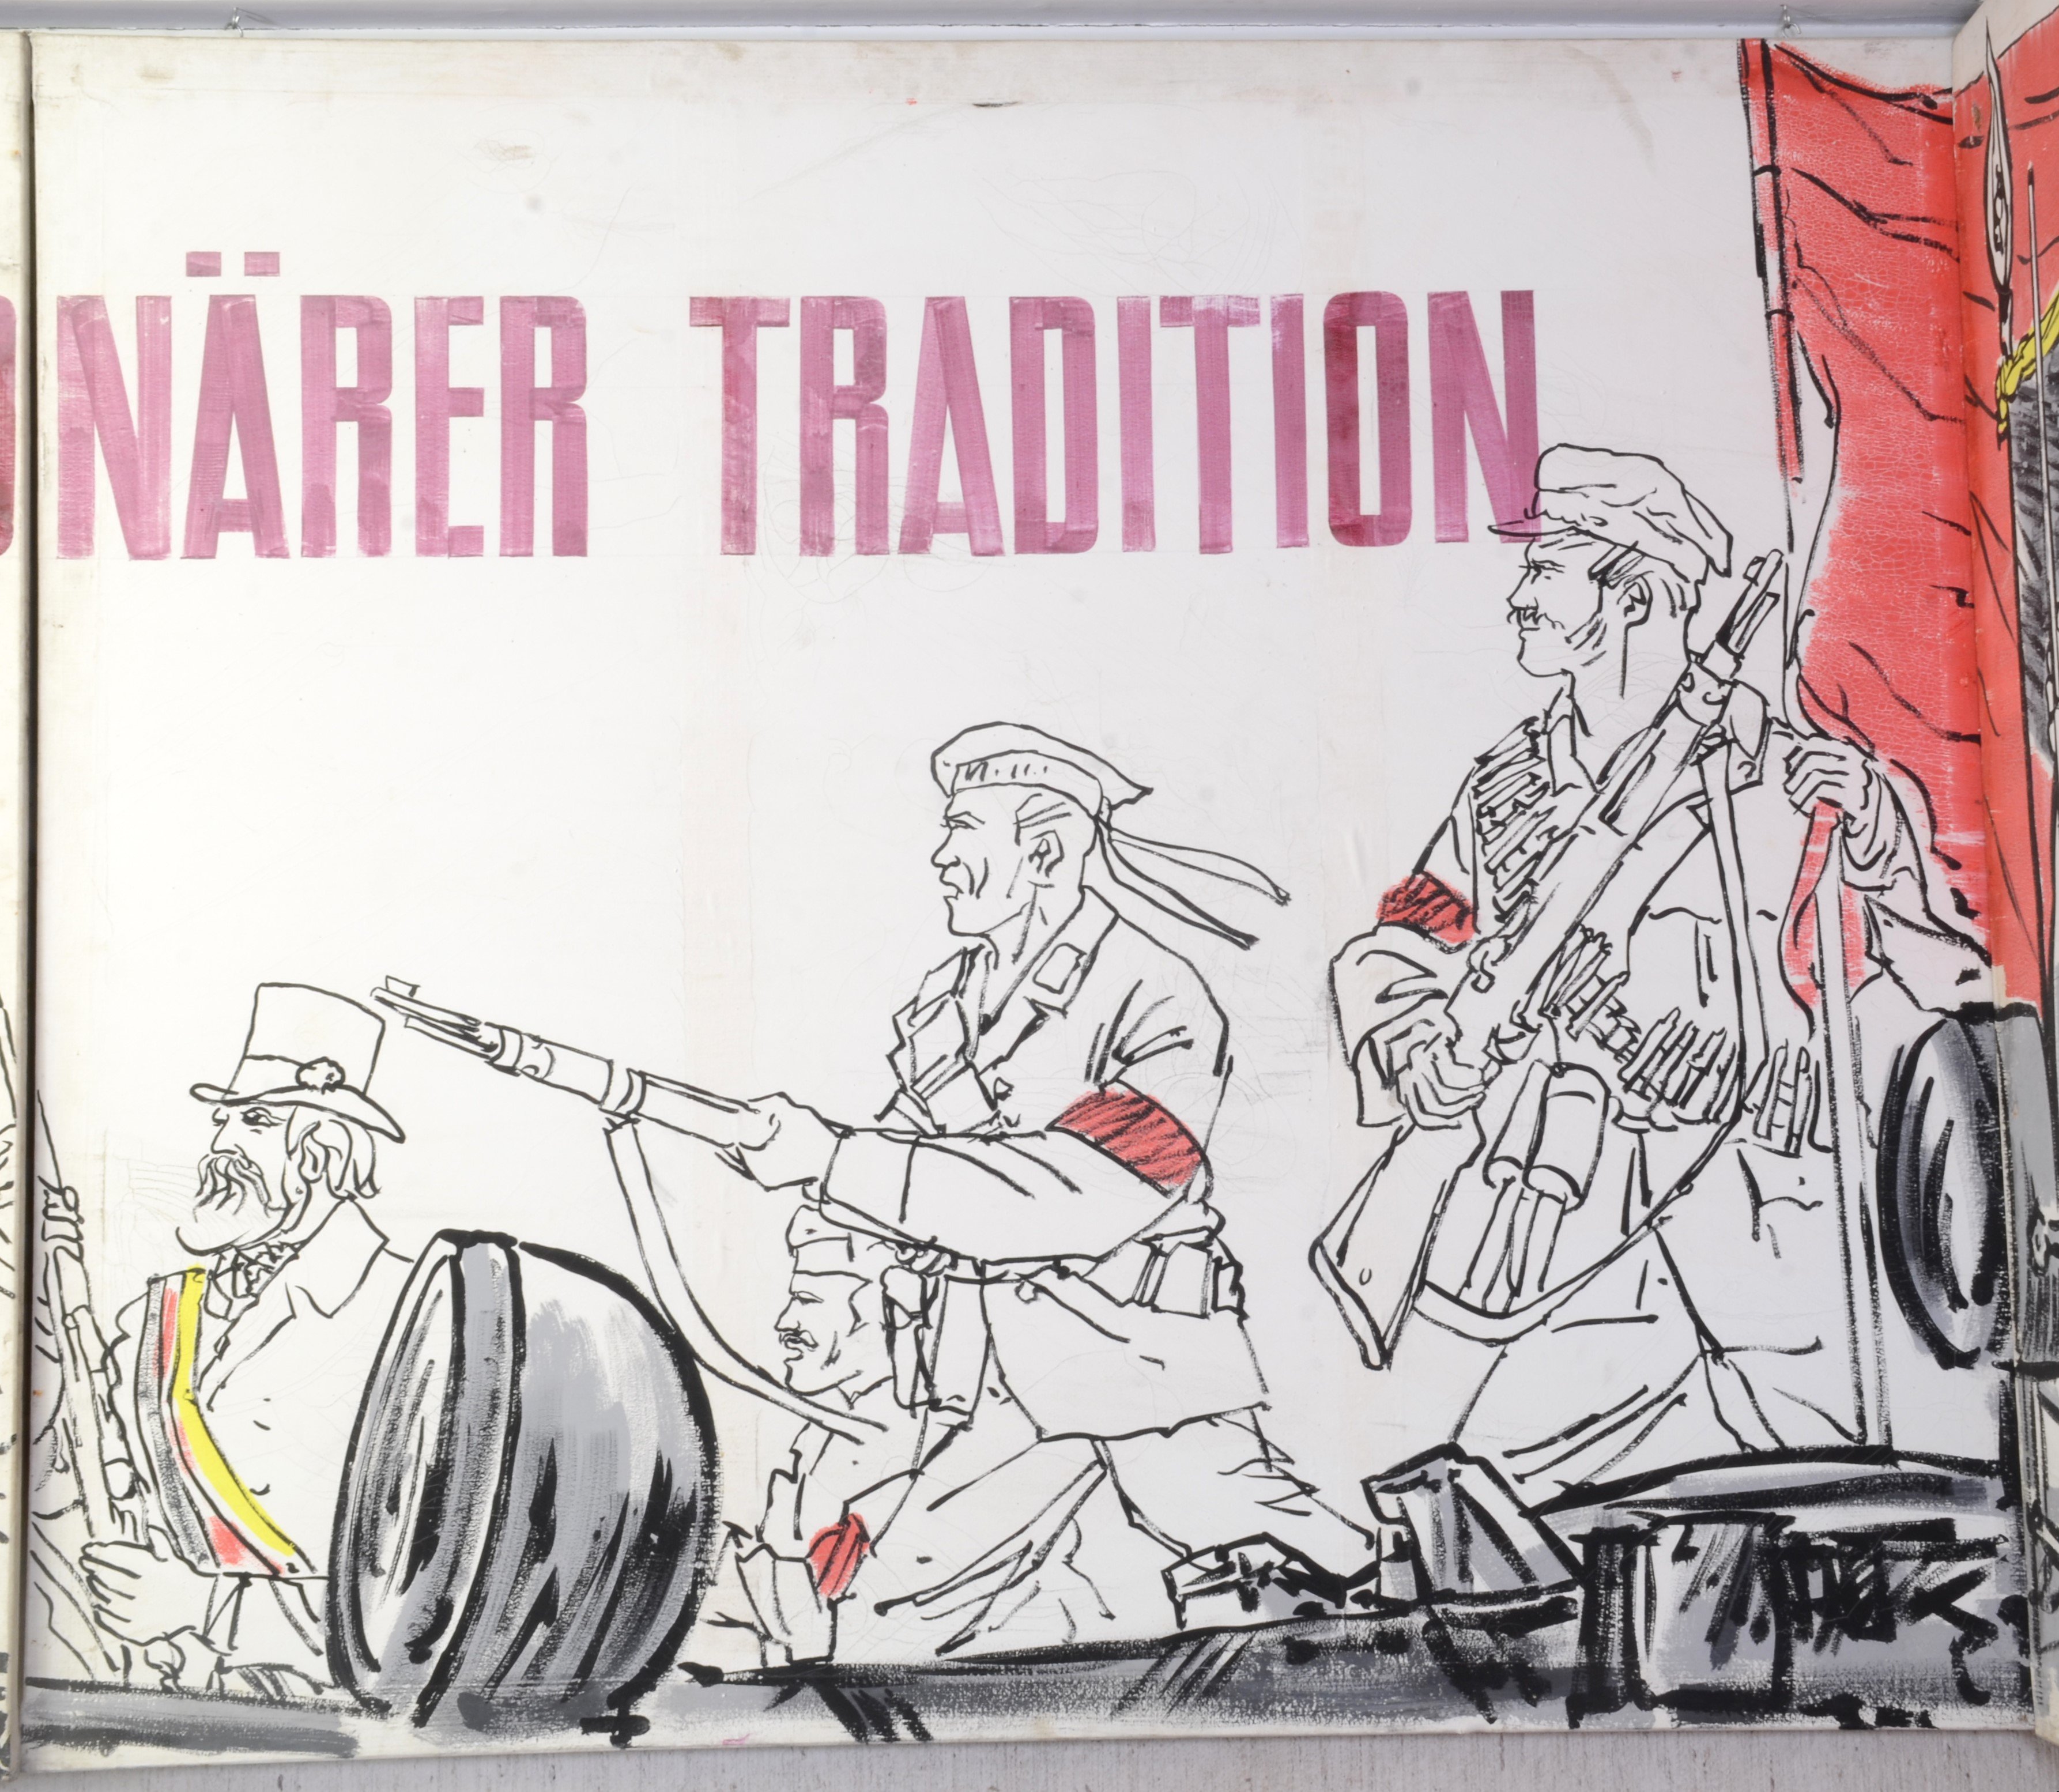 Zweite Tafel der dreiteiligen Serie "Ergebnis Revolutionärer Tradition" (DDR Geschichtsmuseum im Dokumentationszentrum Perleberg CC BY-SA)